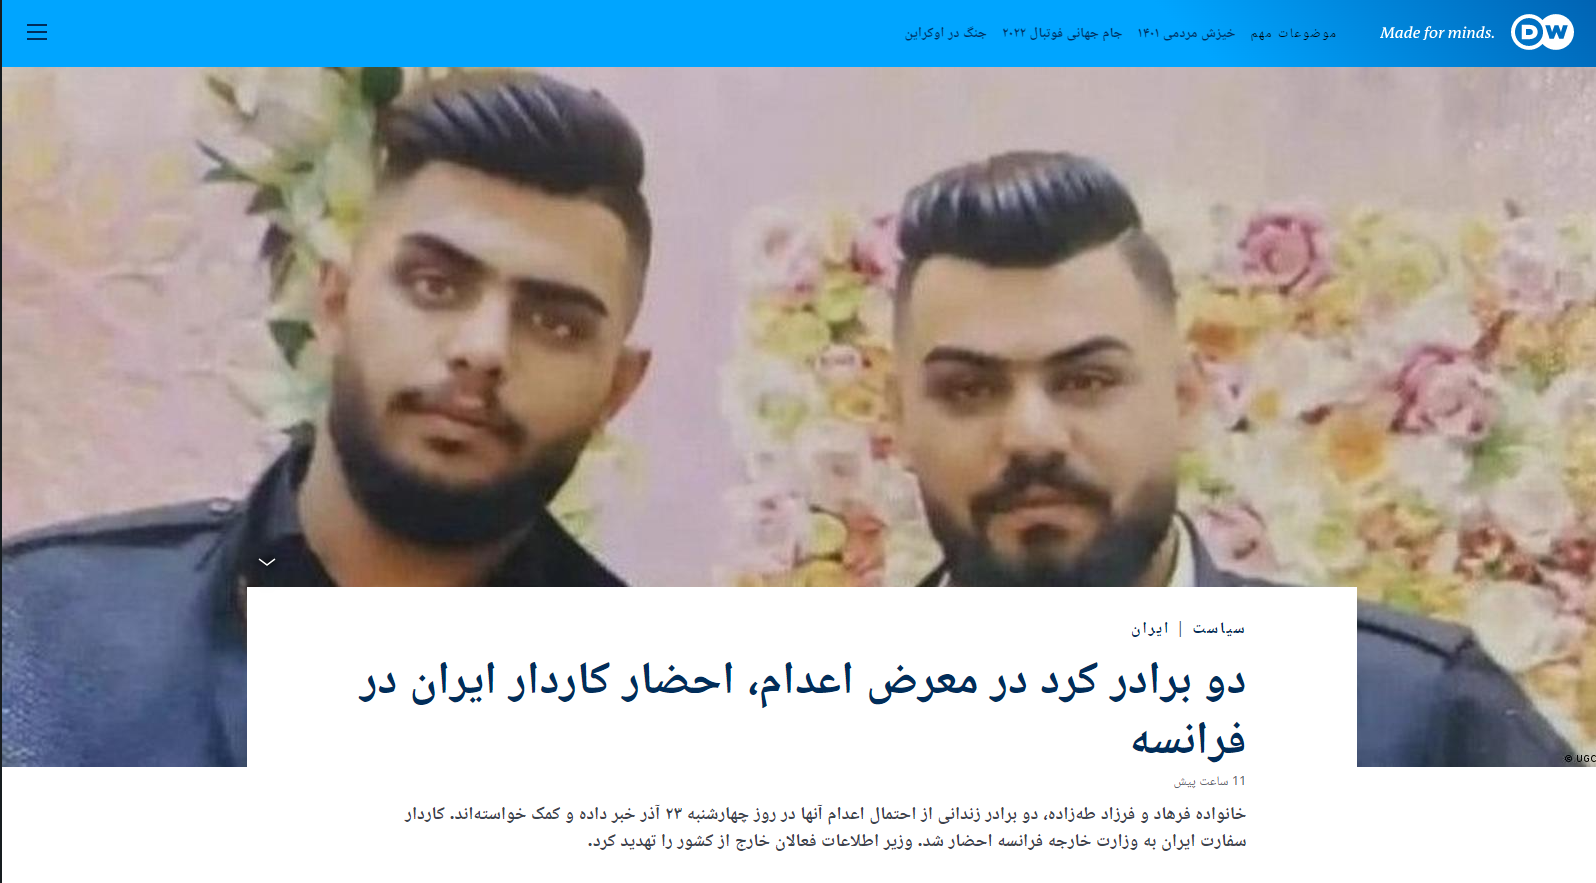 فرهاد و فرزاد طه‌زاده ۲ برادر متهم در اشنویه در معرض خطر اعدام قریب‌الوقوع هستند؟+ عکس